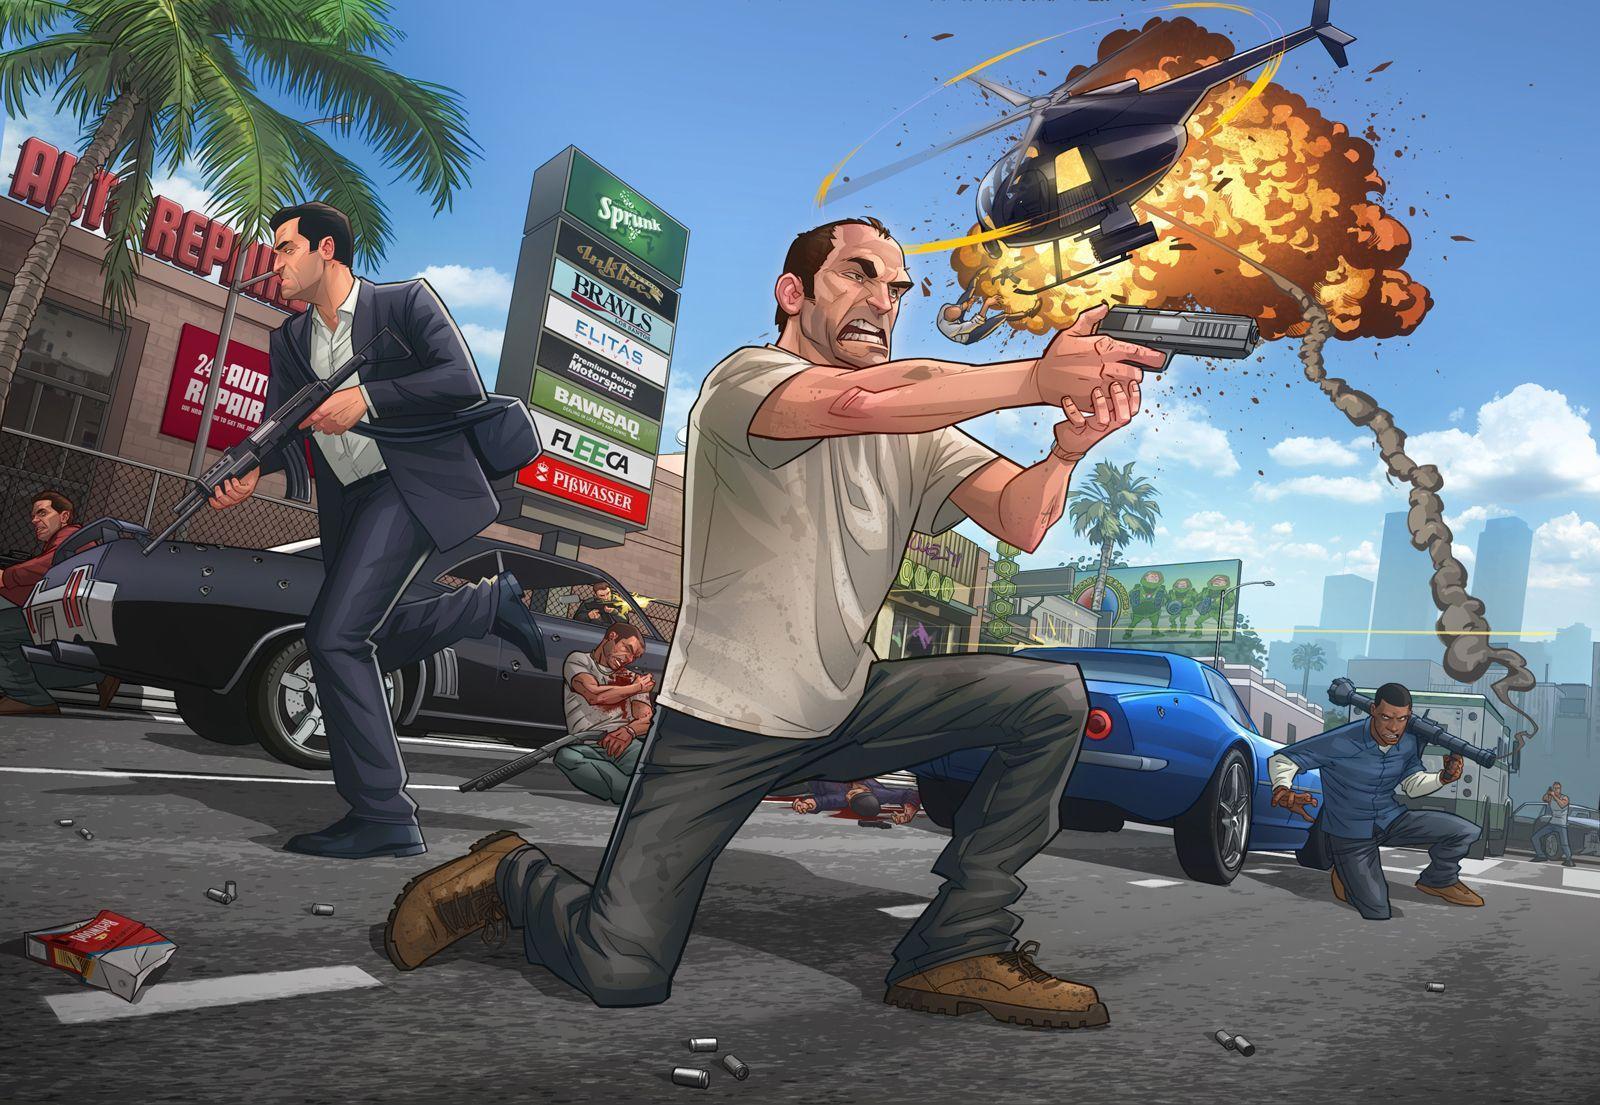 HD Grand Theft Auto V Wallpaper. Full HD Picture